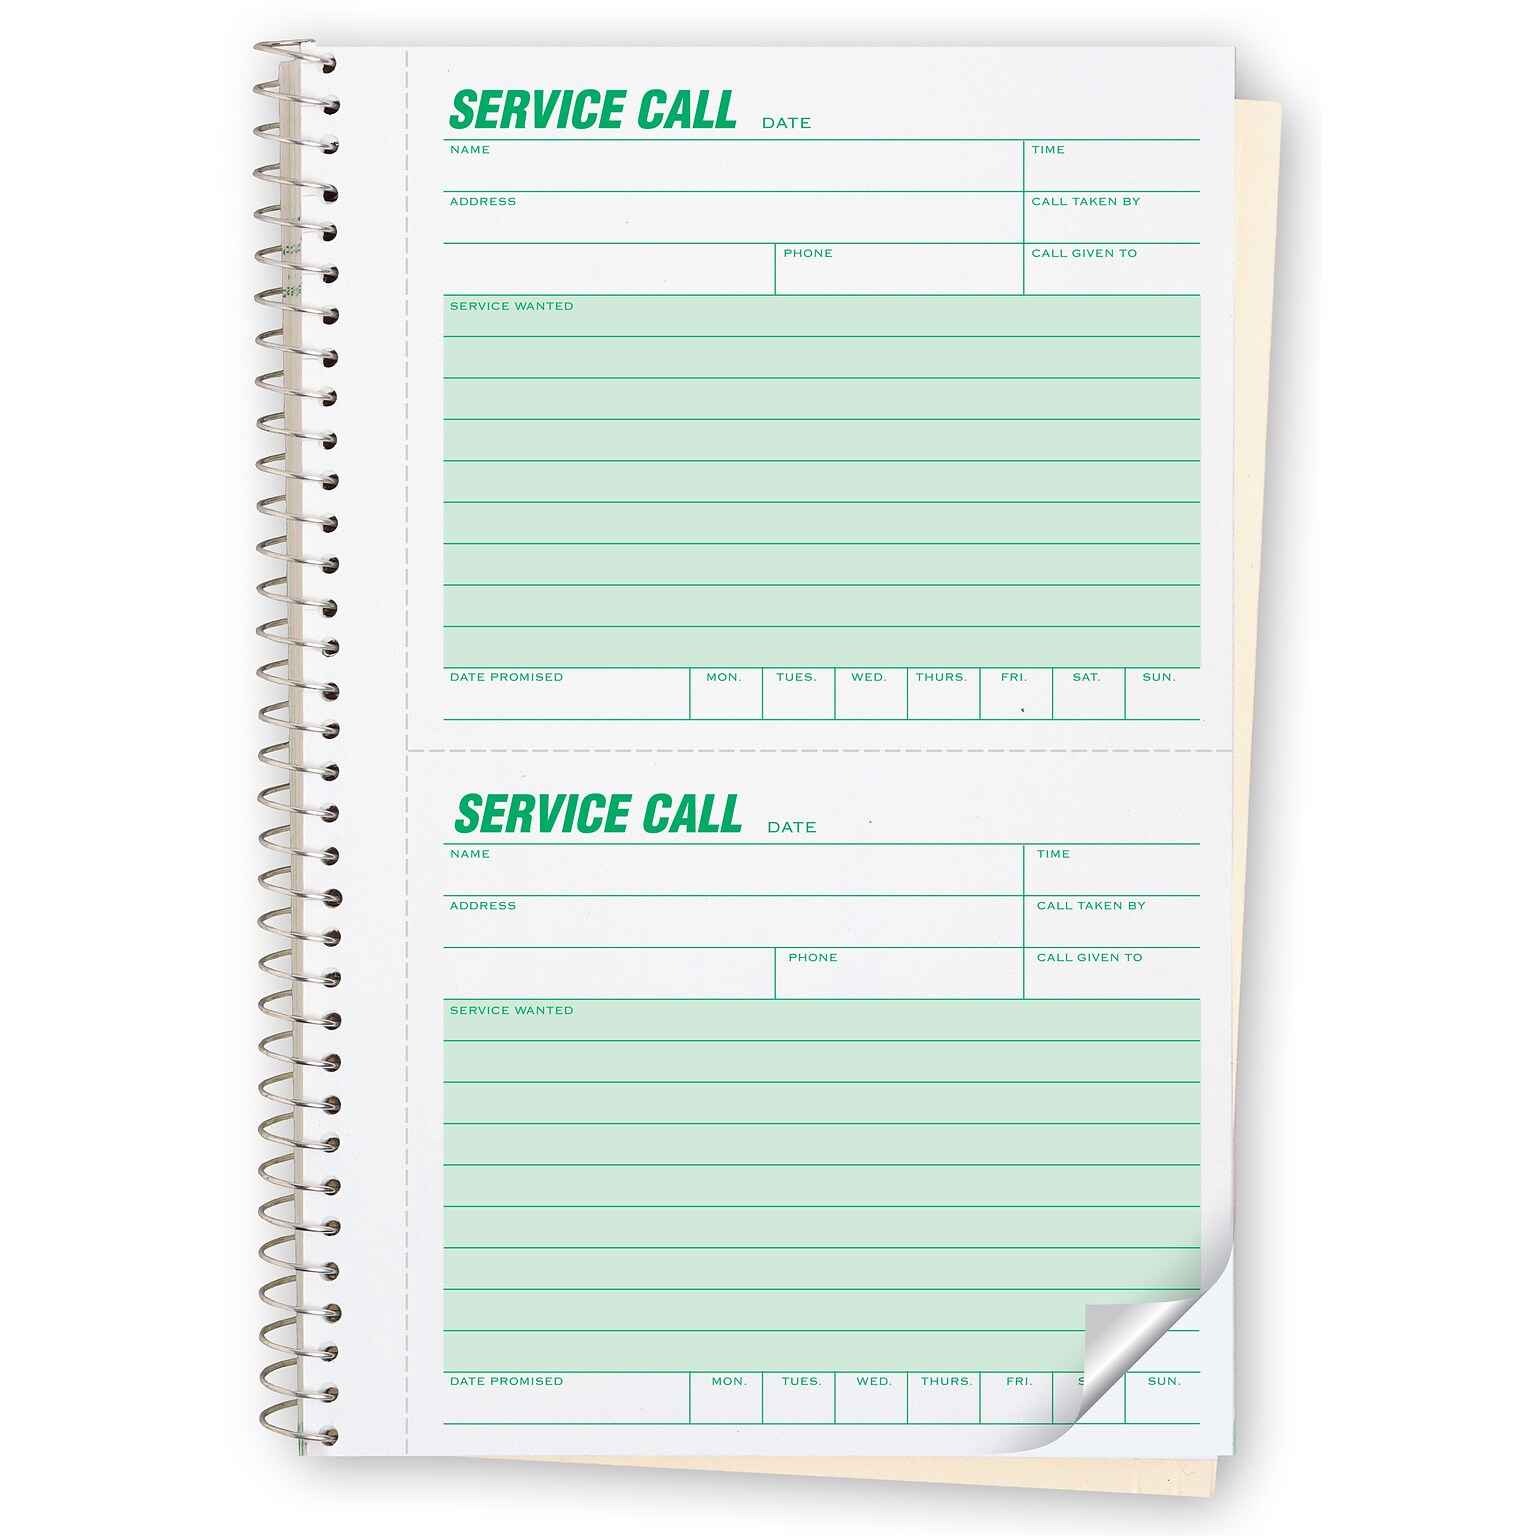 Service Call Phone Message Book, 5 5/8 x 8 1/2, 3 books per pack